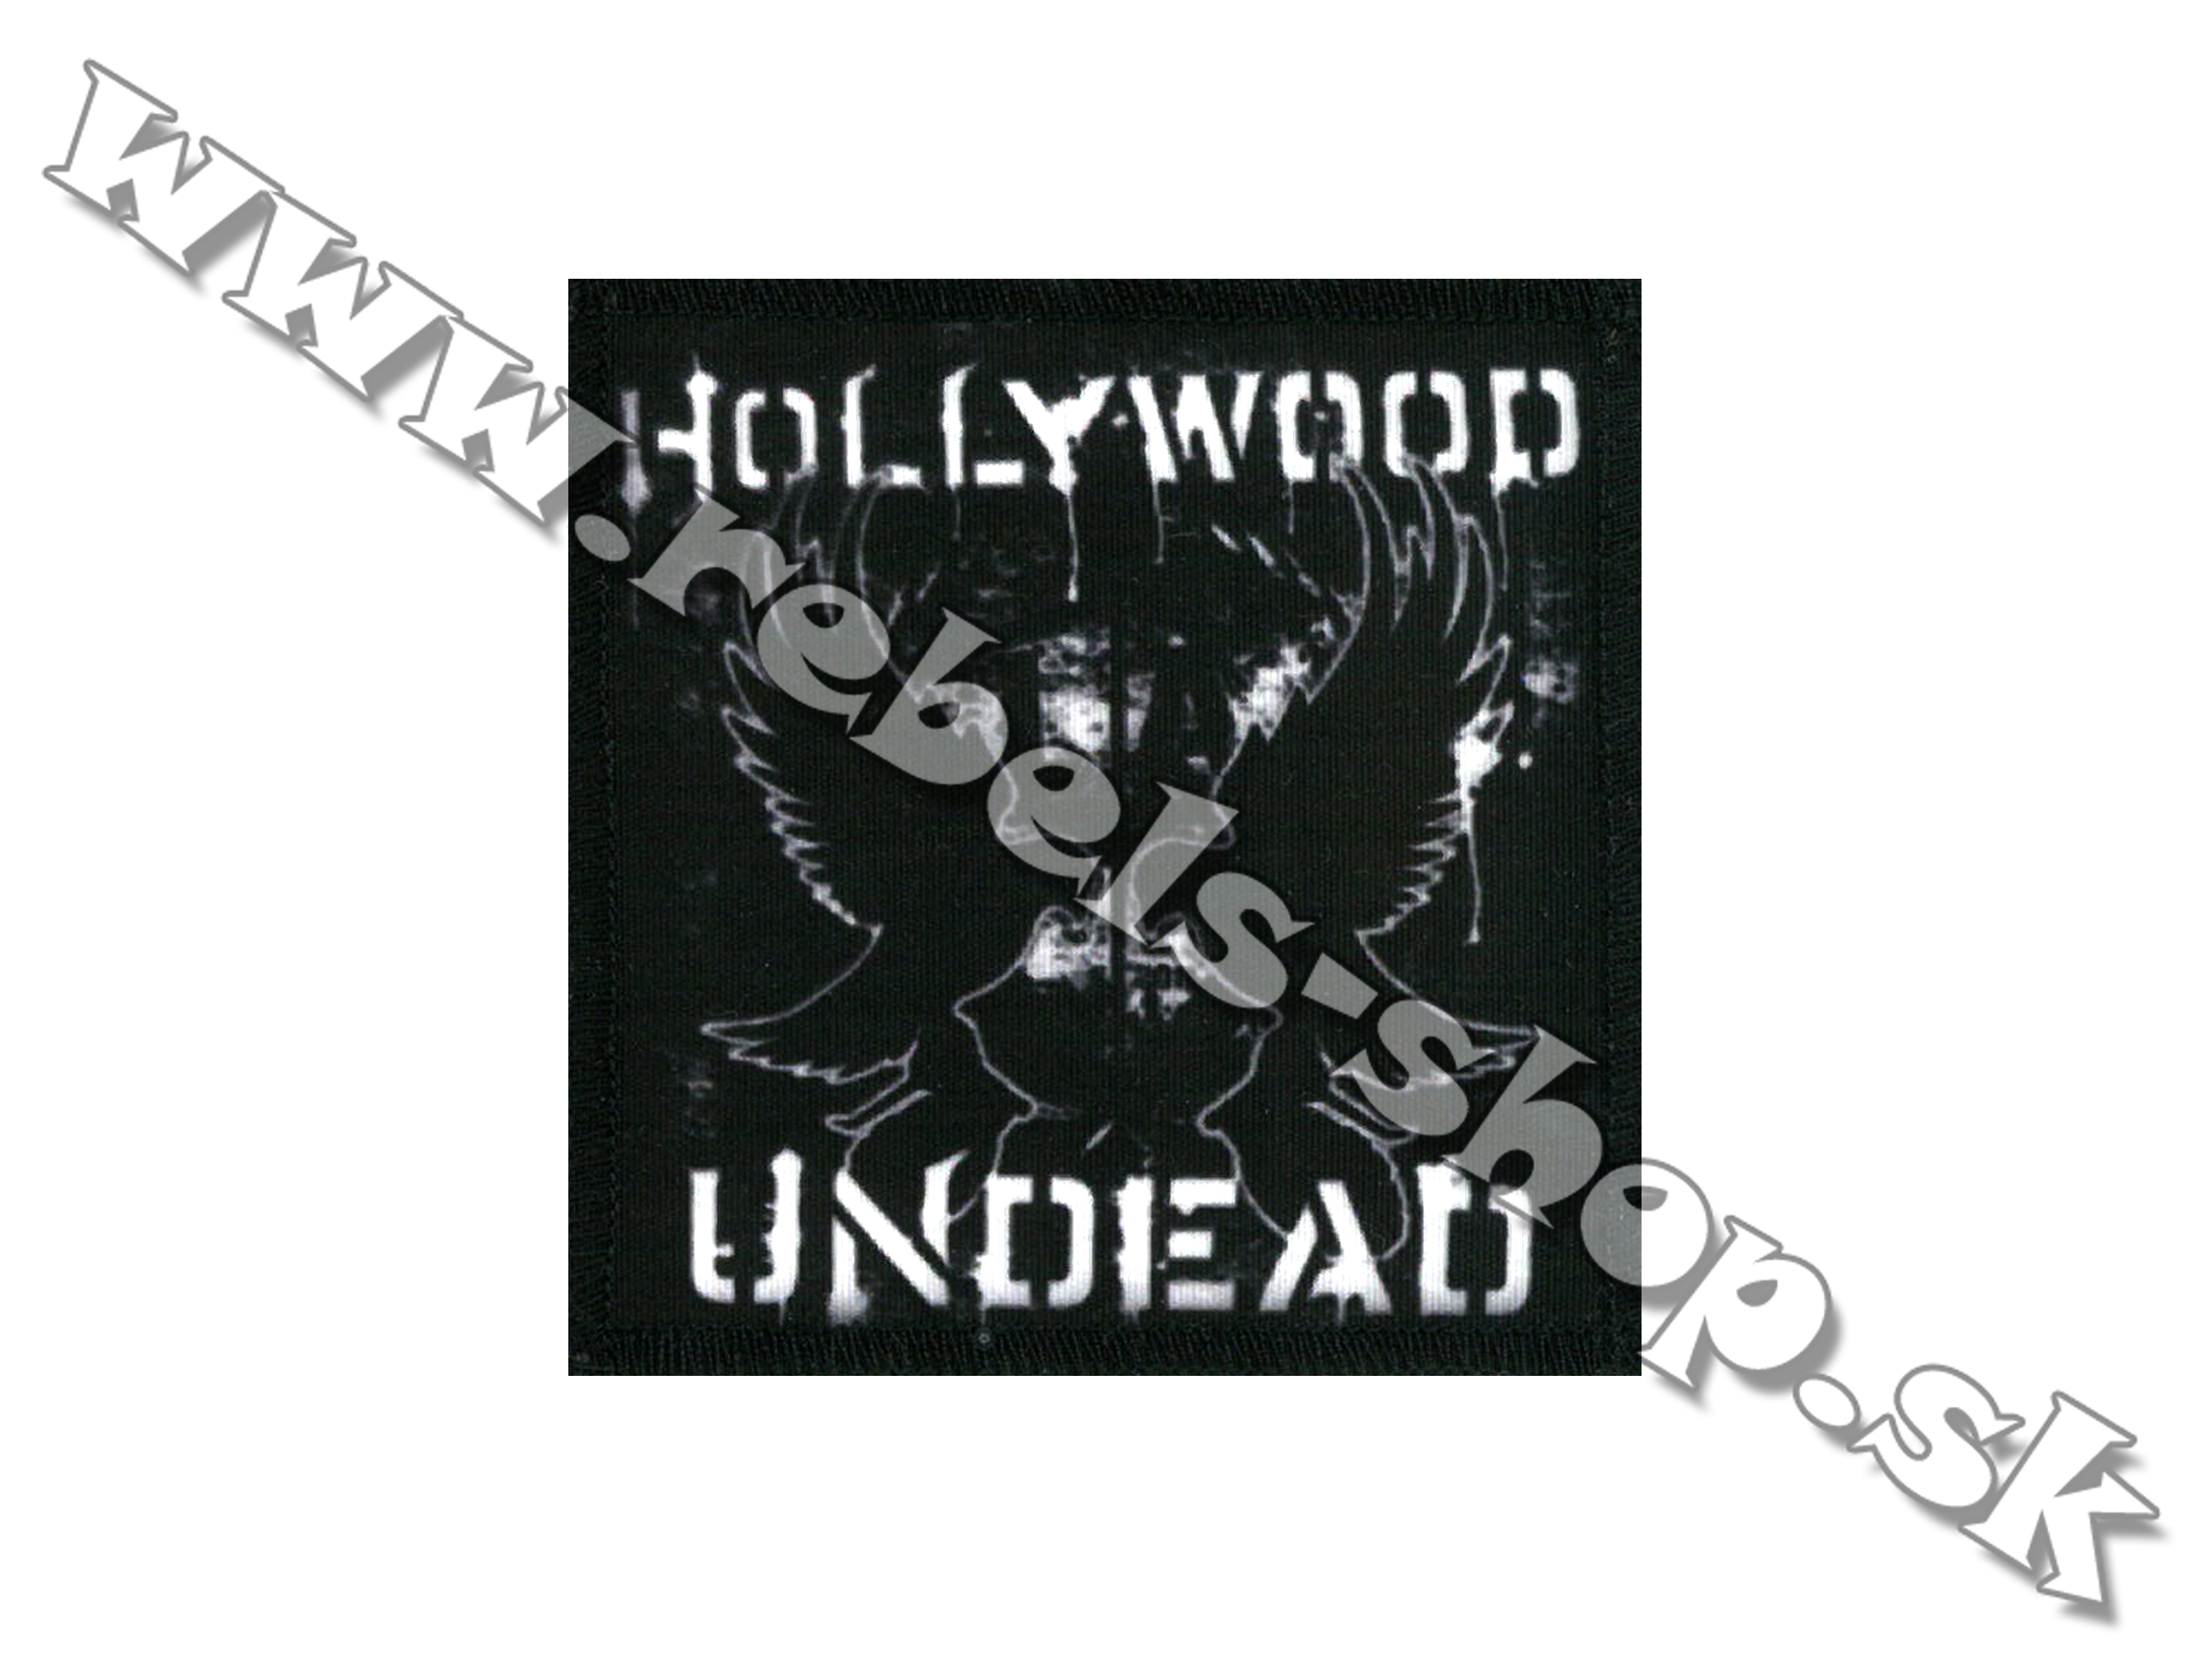 Nášivka "Hollywood Undead"